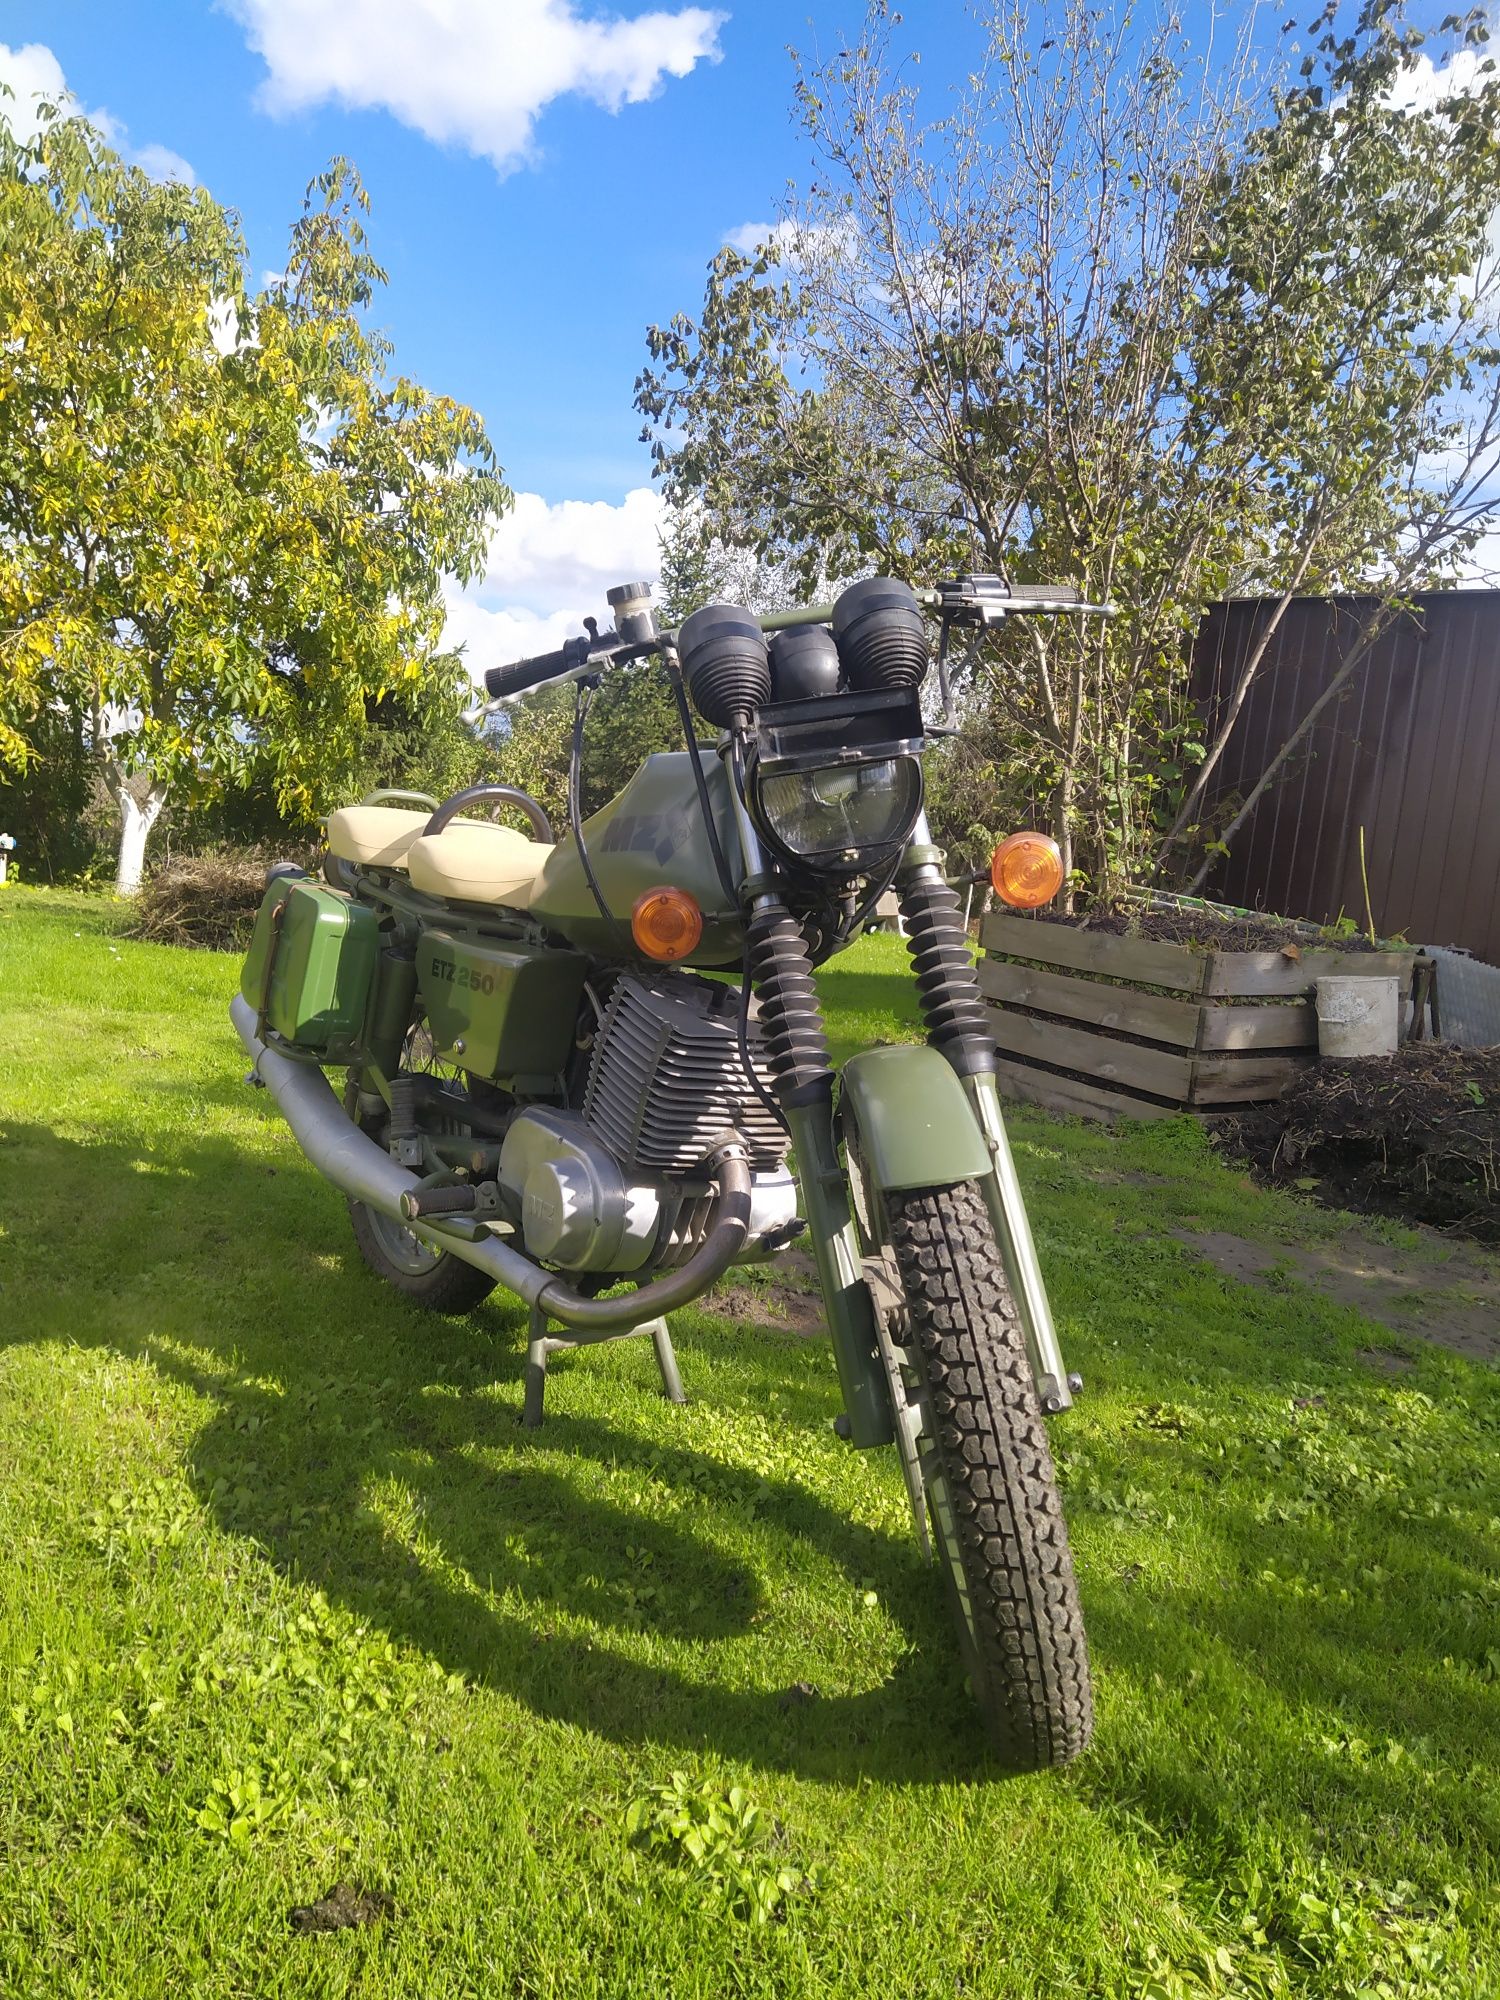 Motocykl MZ ETZ 250A wersja militarna